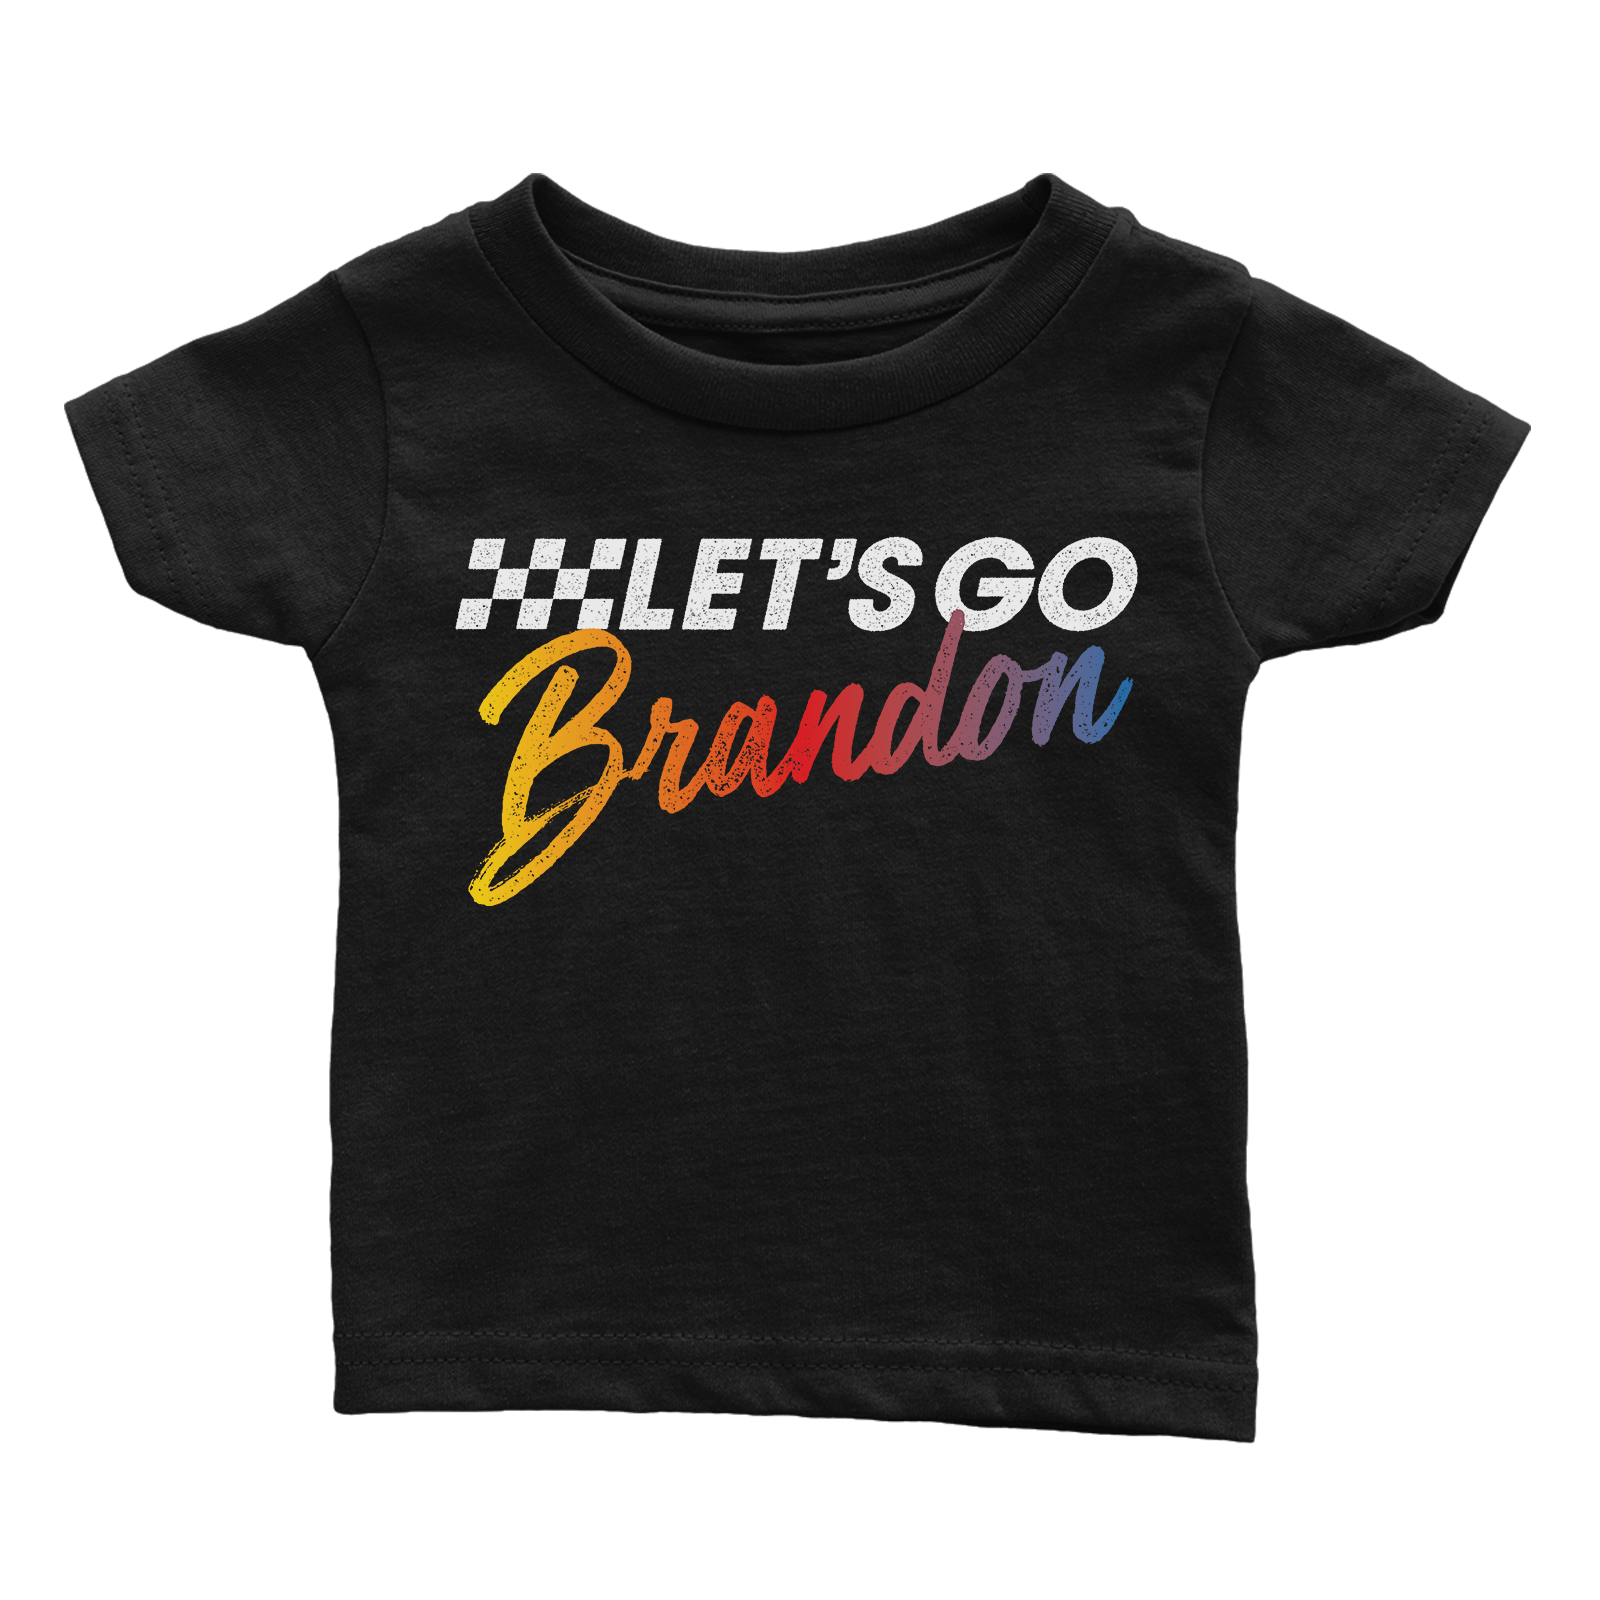 Apparel Premium Infant Shirt / Black / 6 Months Let's Go Brandon - Rugrats